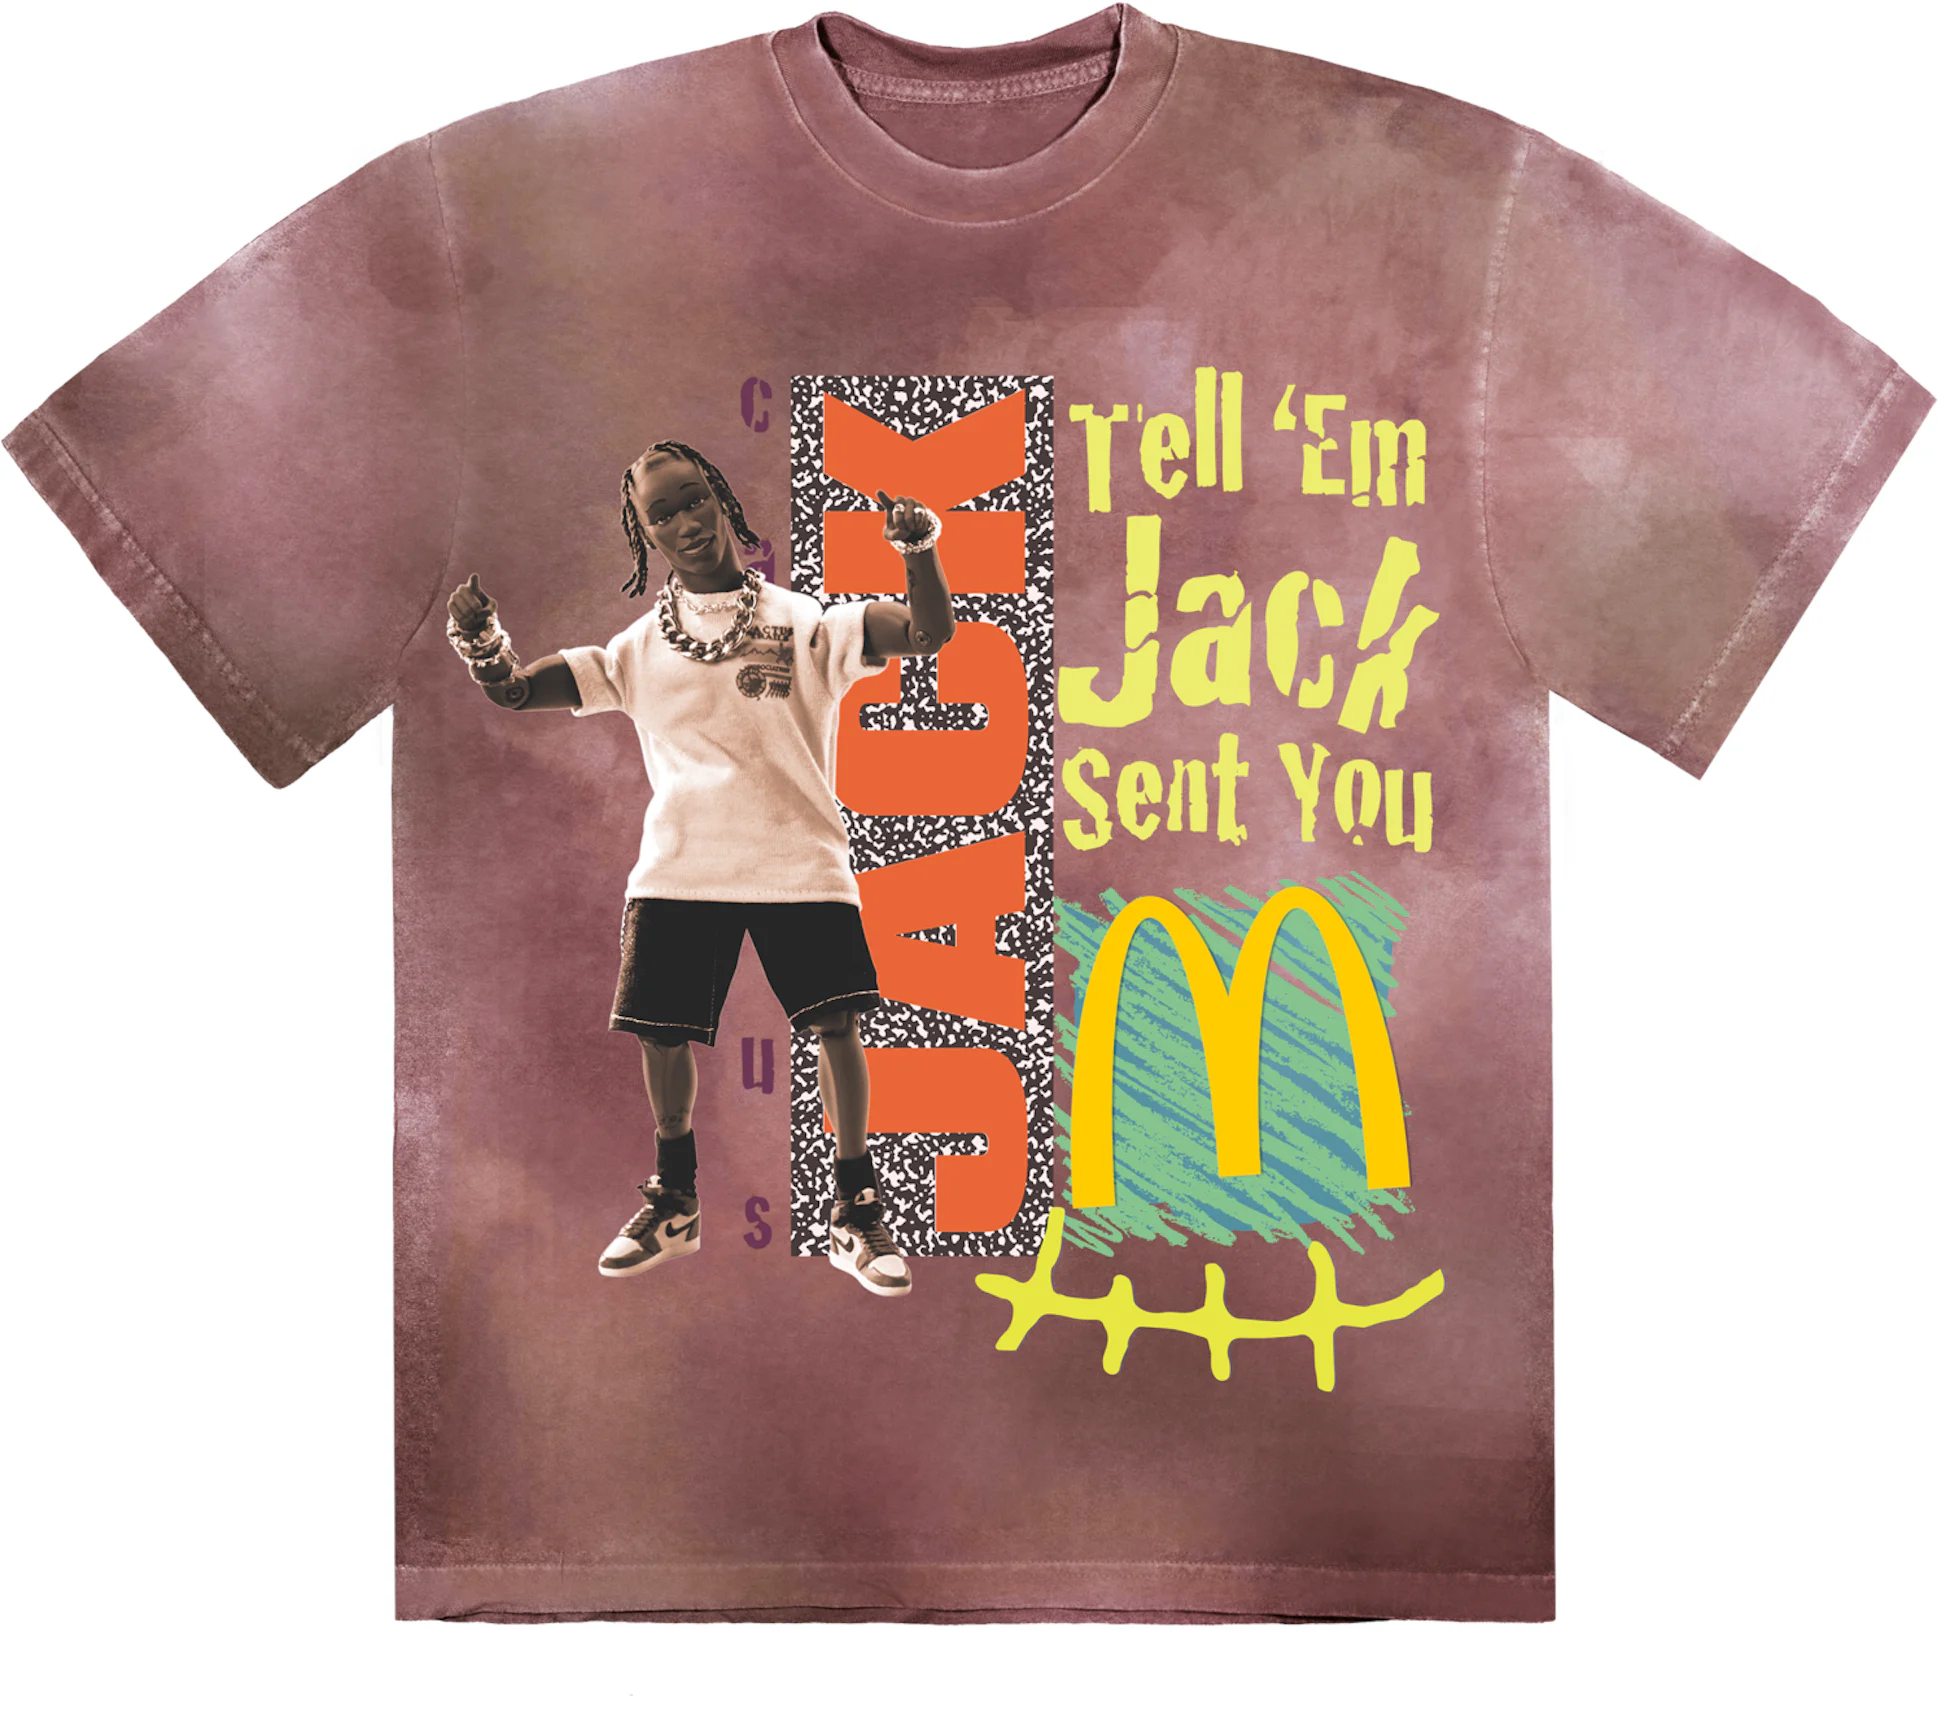 MサイズTravis Scott x McDonald's  T-Shirt  新品